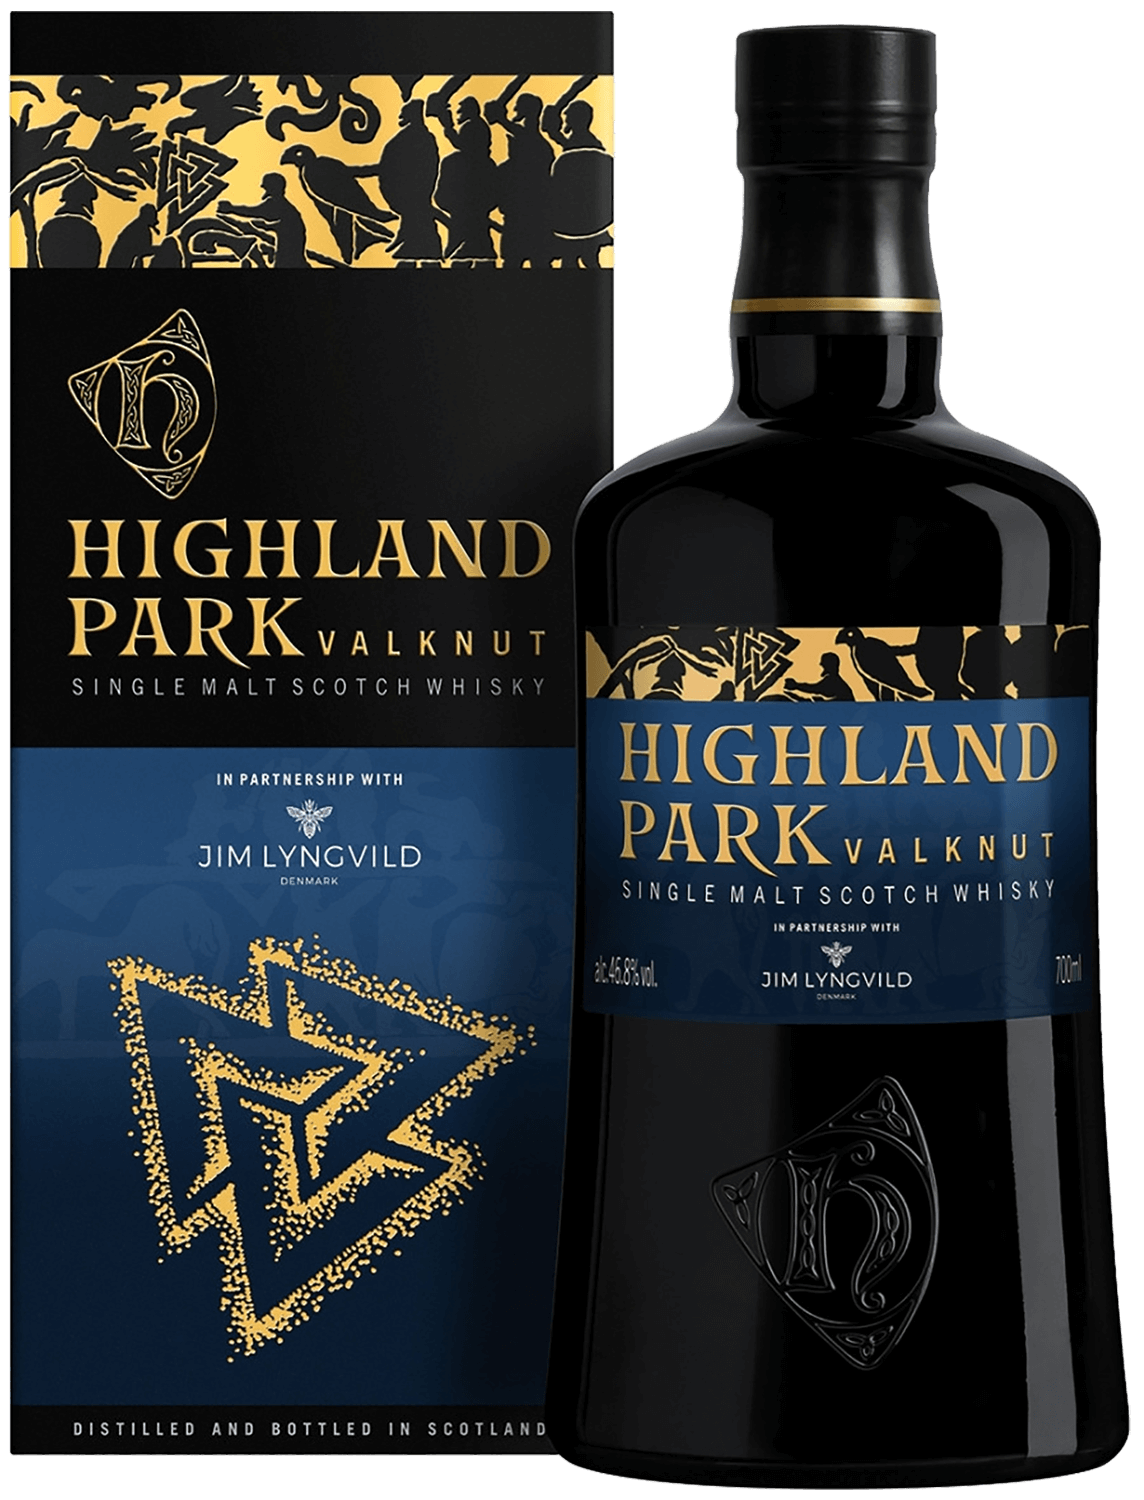 Highland Park Valknut Single Malt Scotch Whisky (gift box) highland park 21 years old single malt scotch whisky gift box